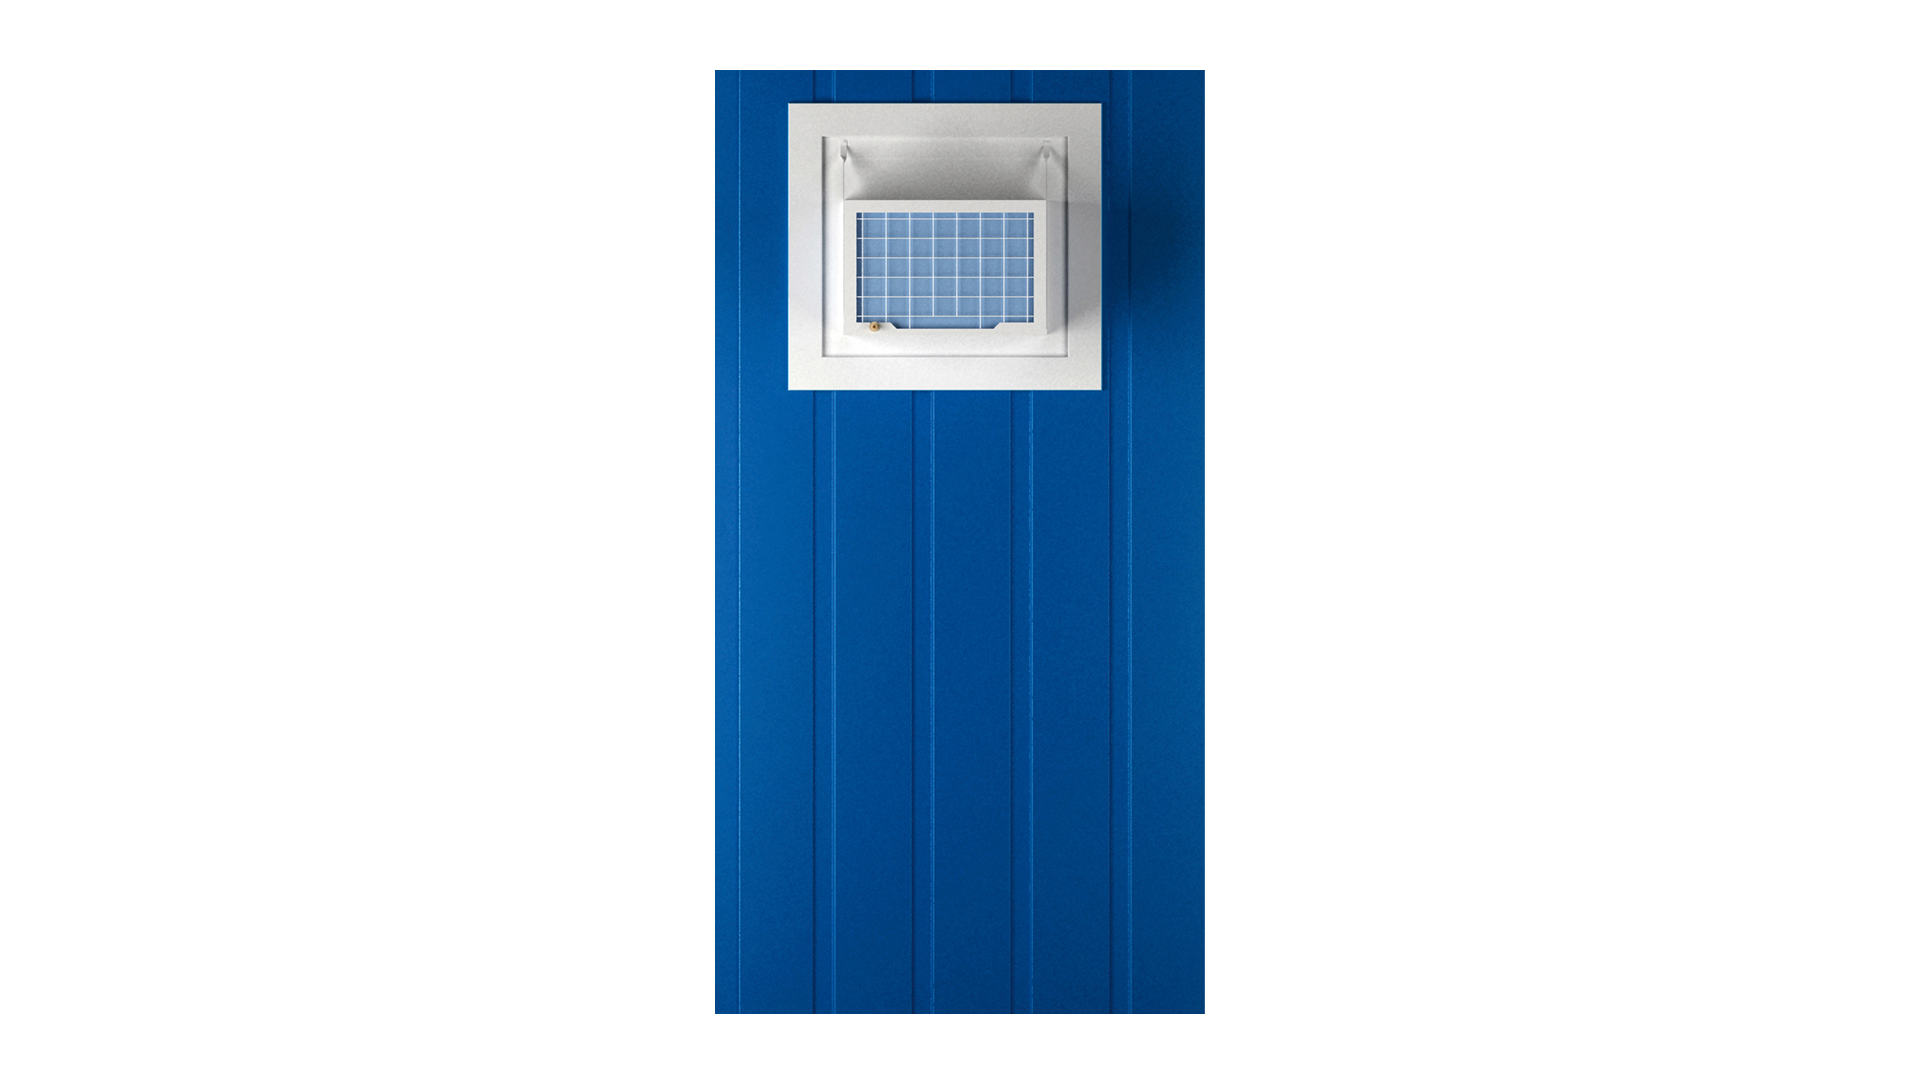 Panel de aire acondicionado